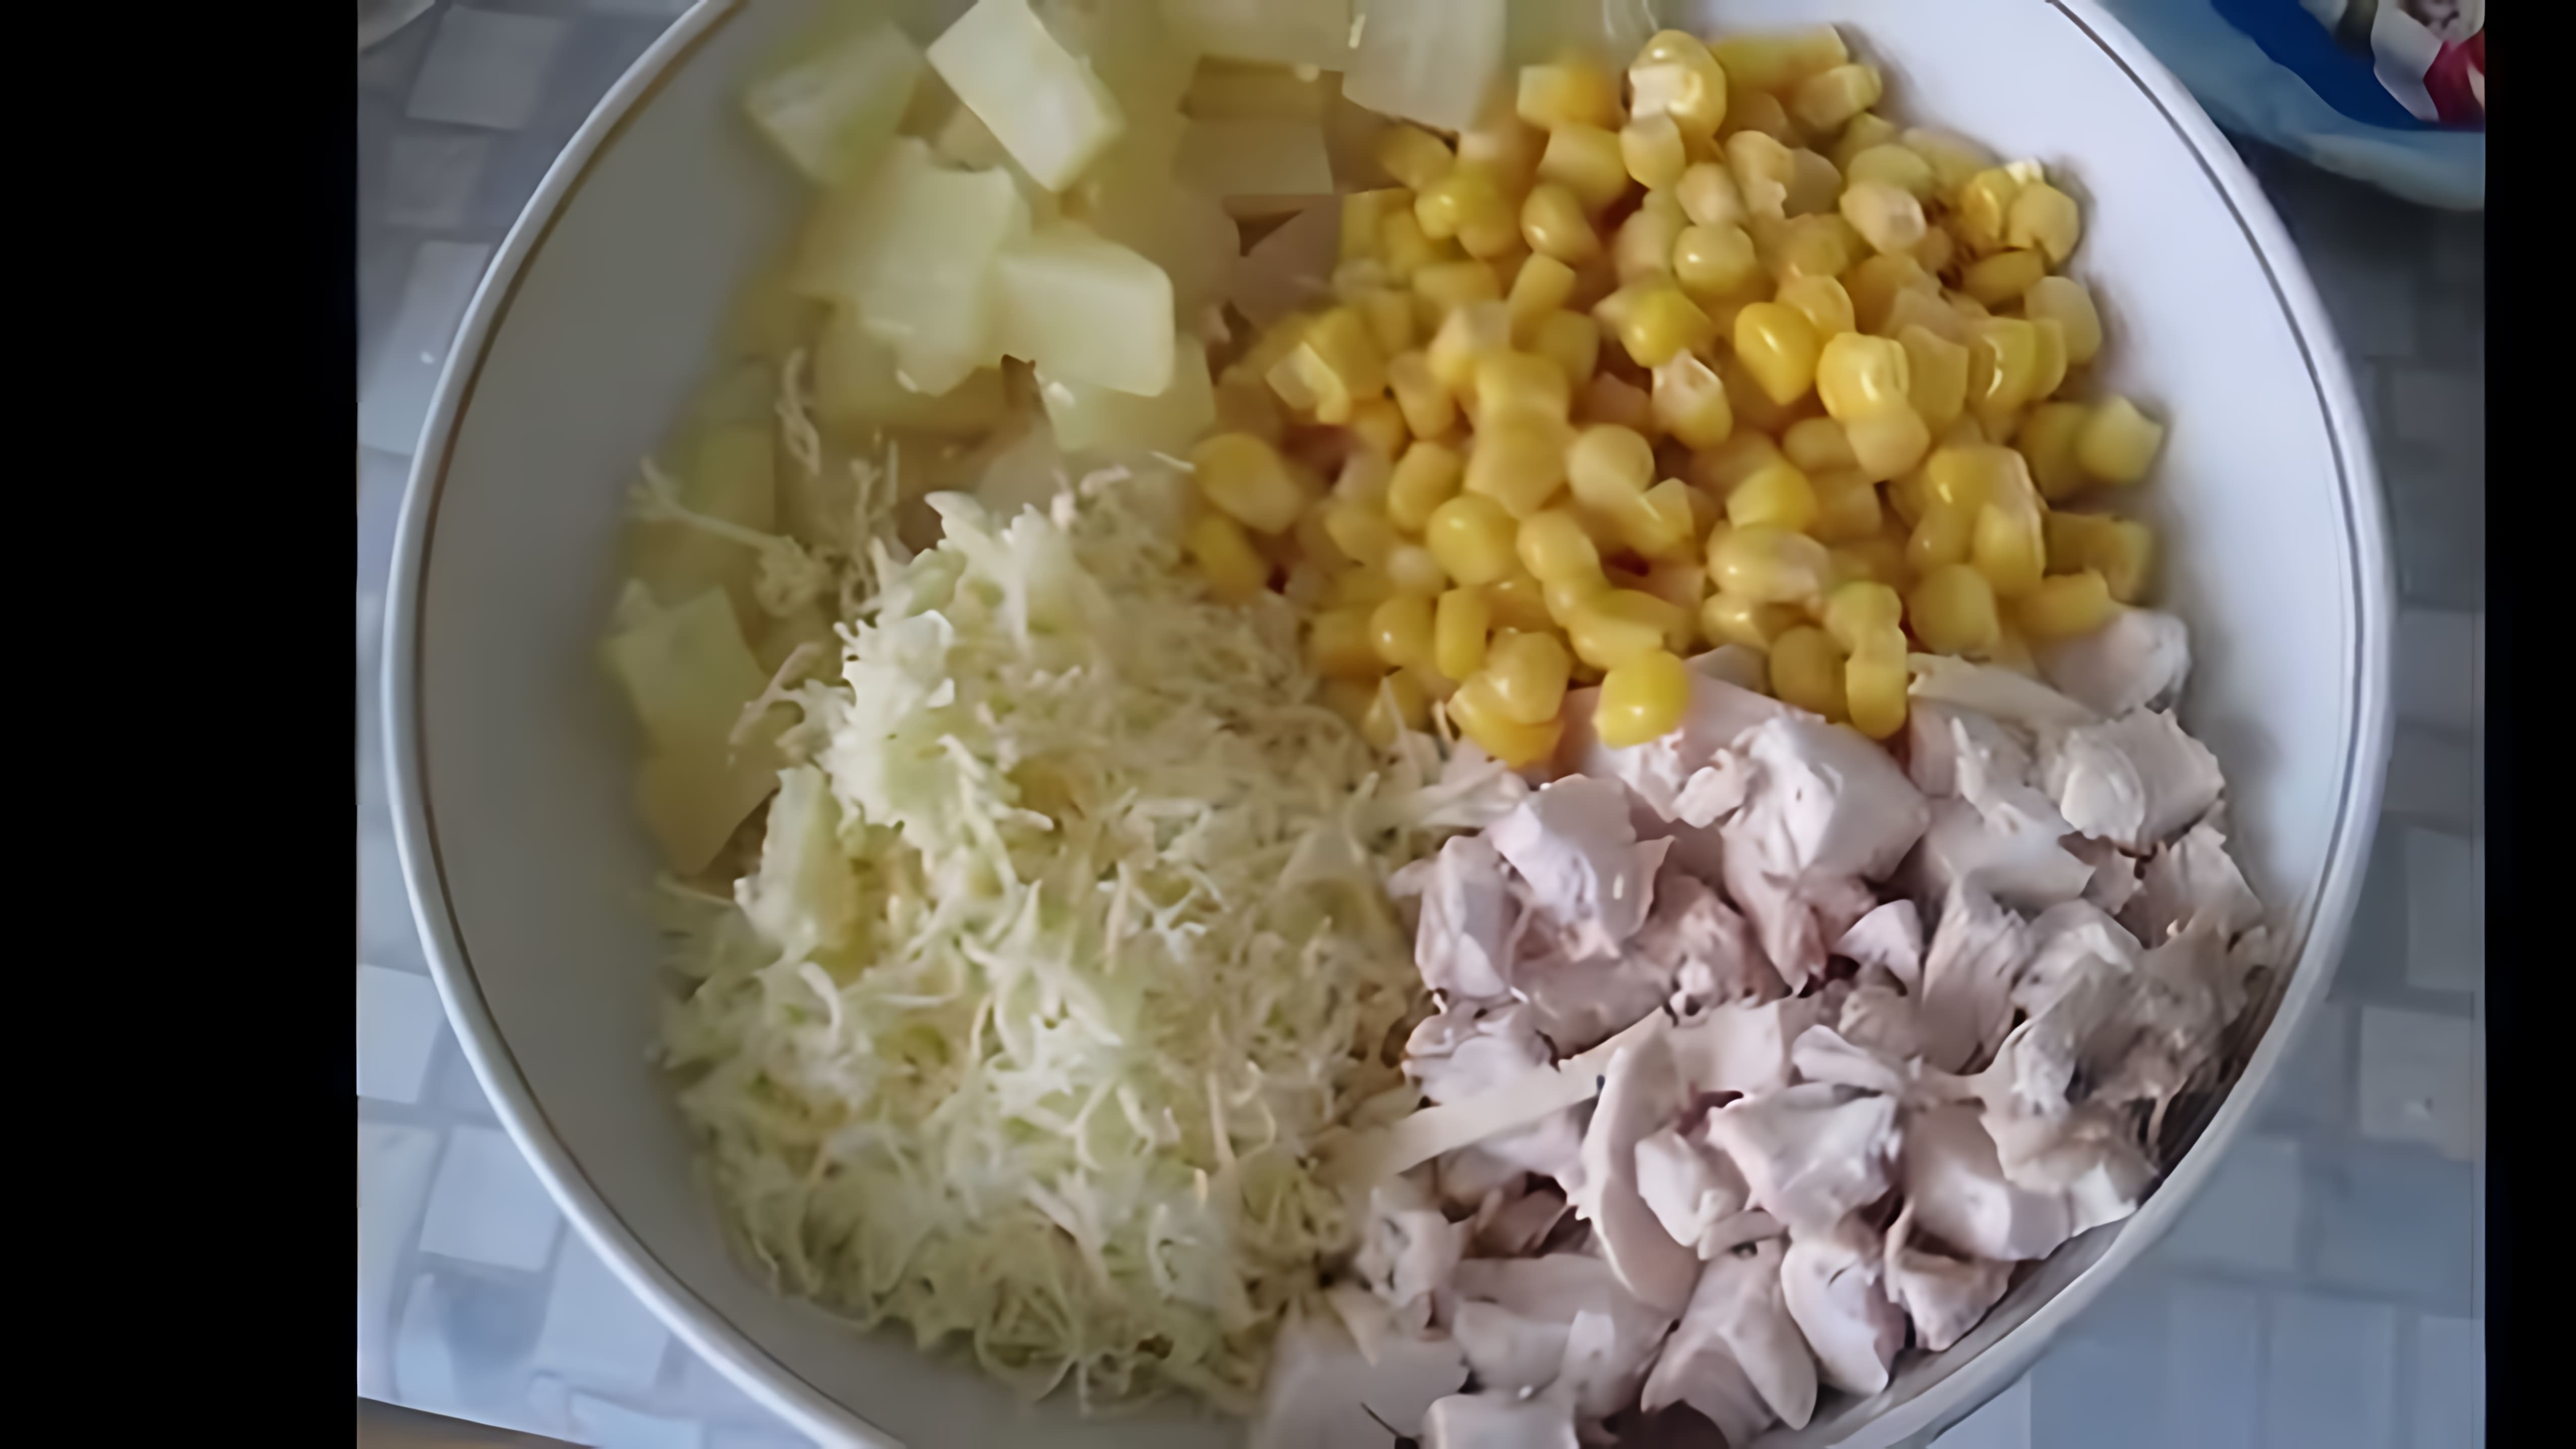 Салат с курицей, кукурузой и ананасами - это вкусное и питательное блюдо, которое можно приготовить в домашних условиях